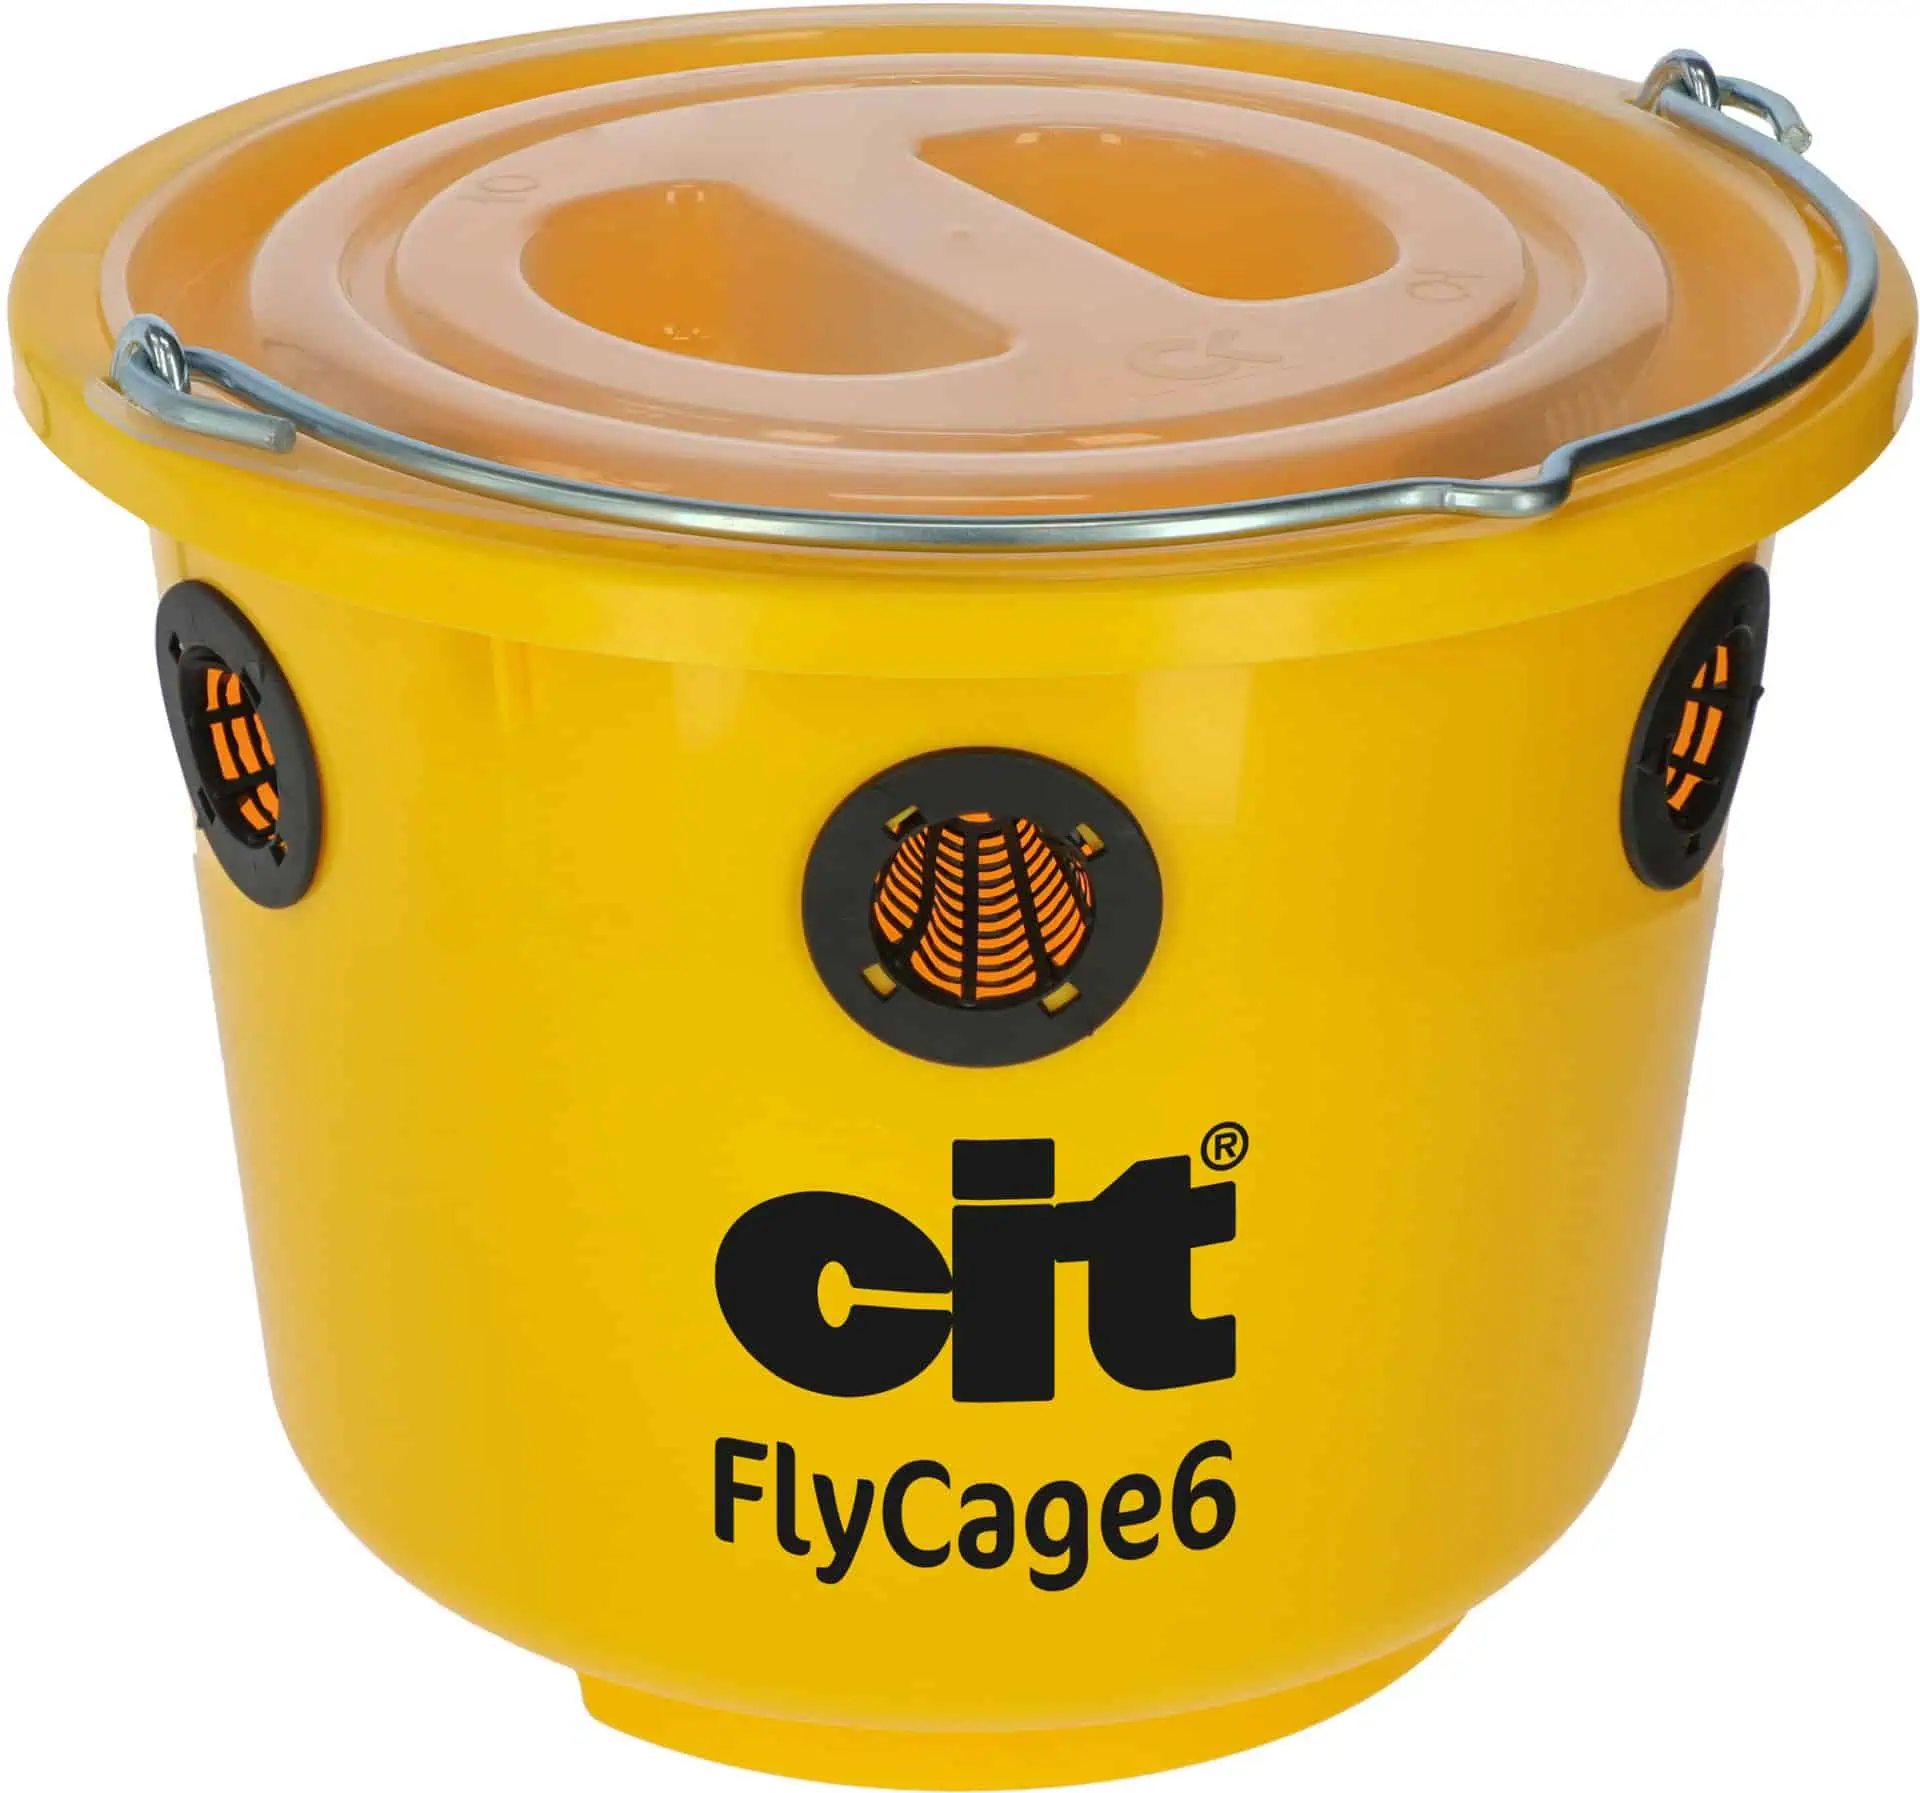 Capcană pentru muște FlyCage6 cu atractant